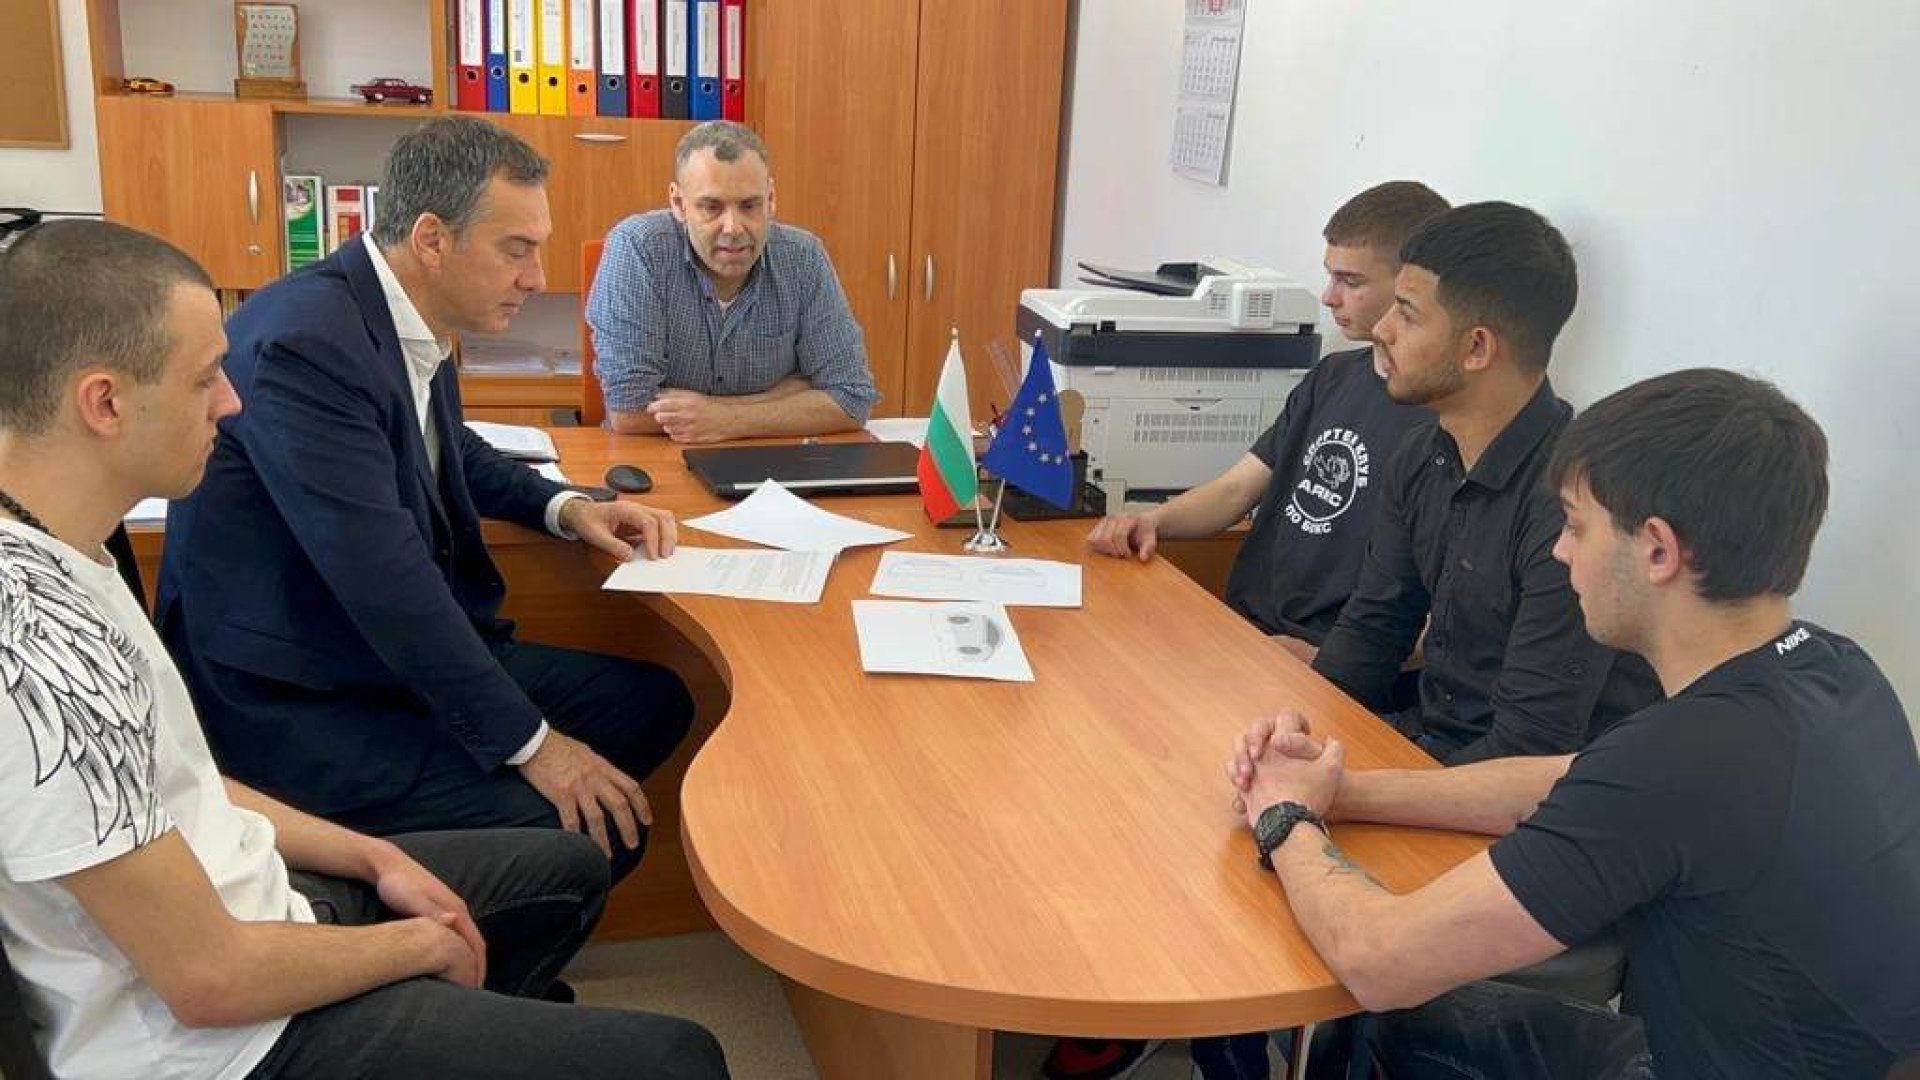 Кметът на Бургас Димитър Николов (вдясно) се срещна с директора на ПГТ Красимир Кънчев и учениците, които ще конструират електромобила. Снимки Община Бургас